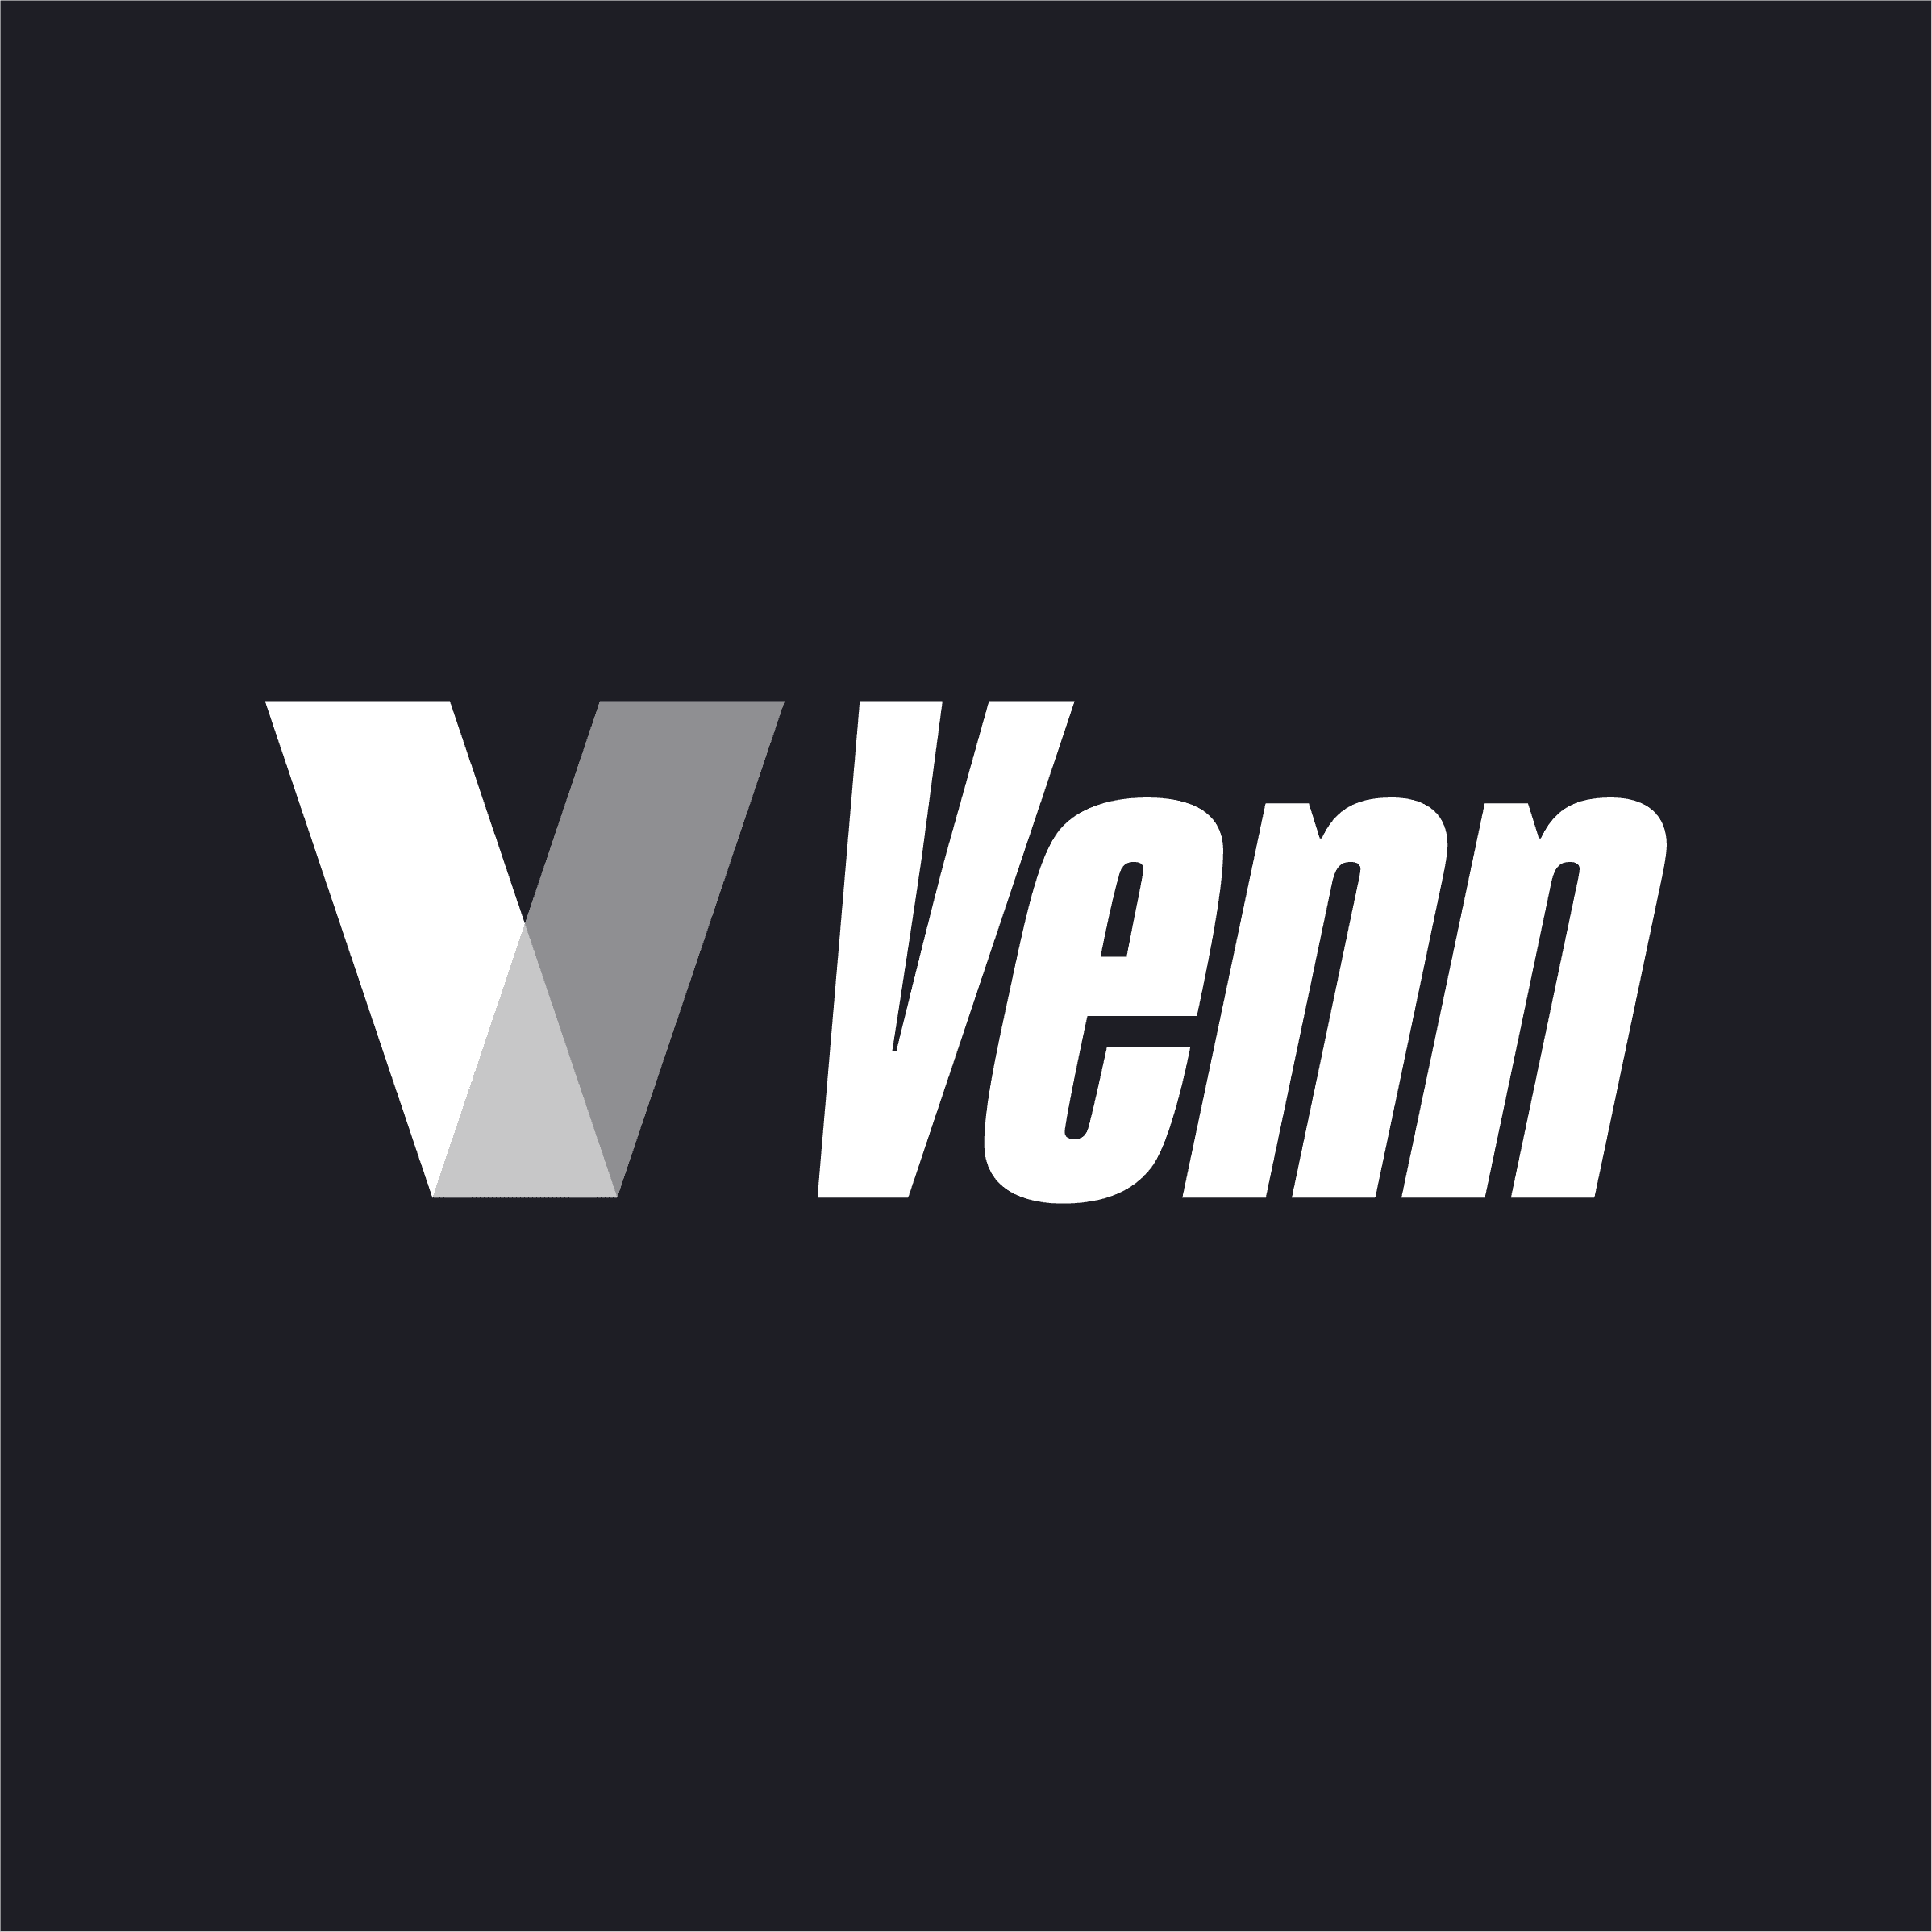 logos_vnn_1__square